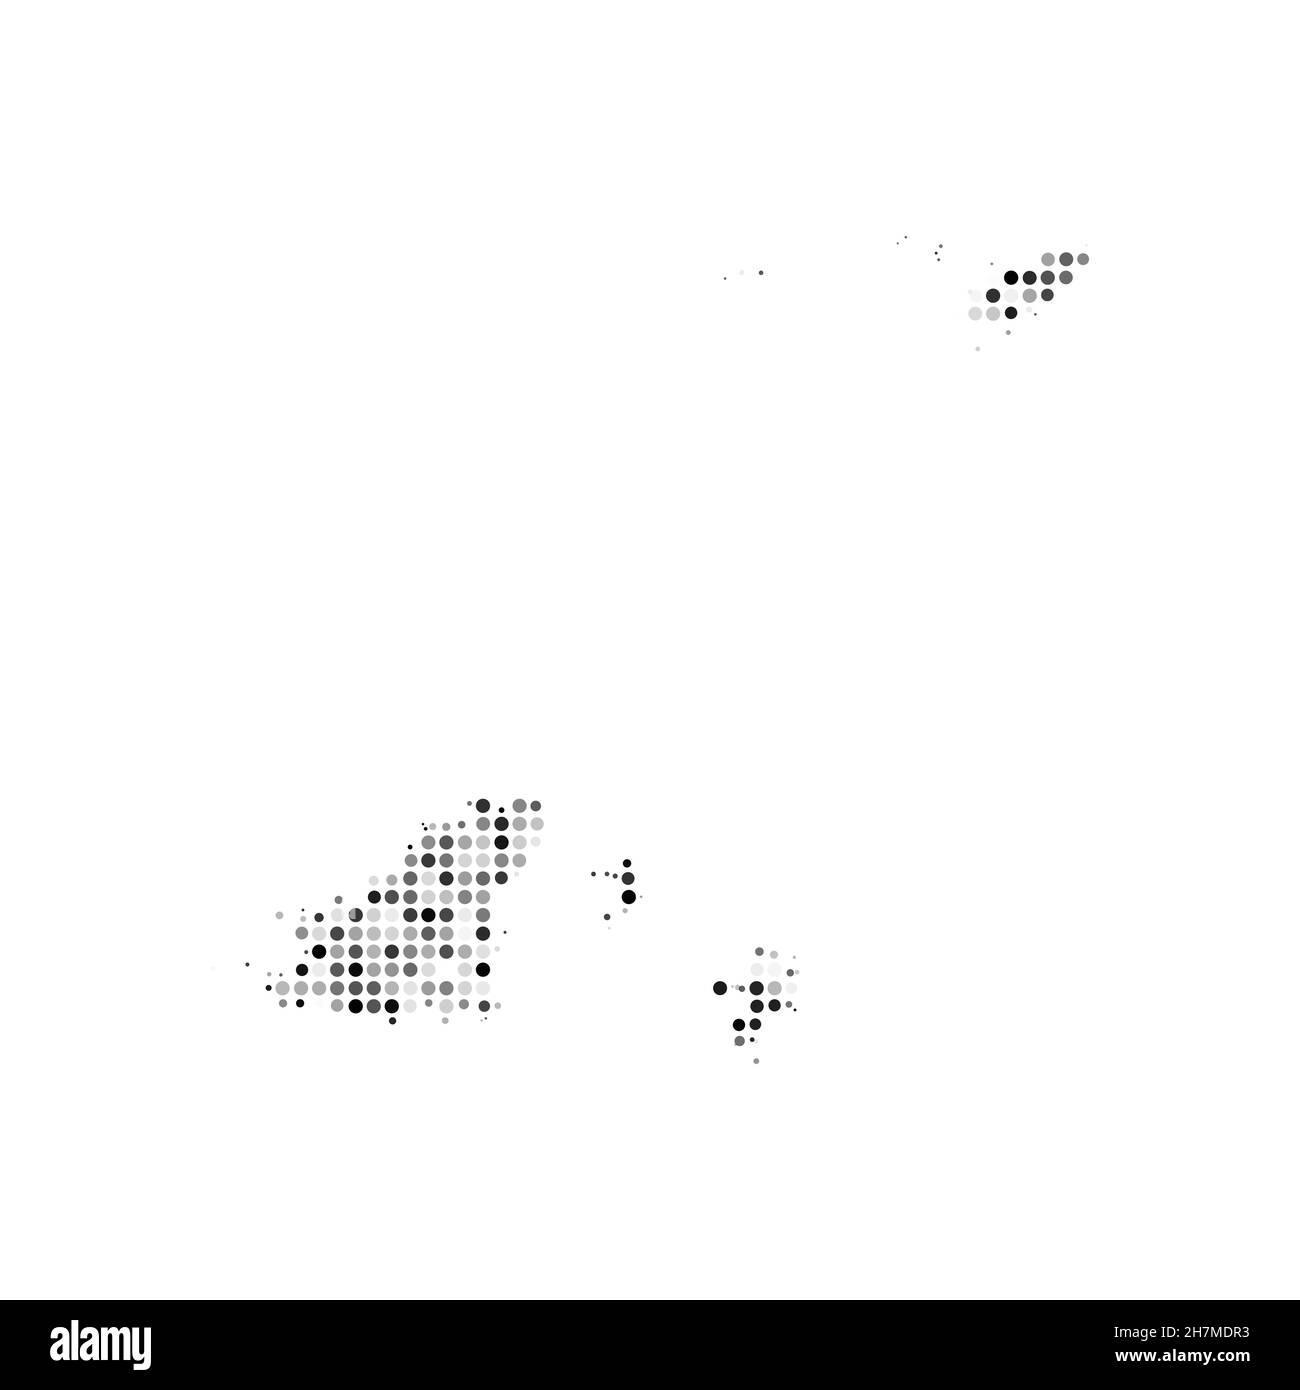 Abstrakte gepunktete schwarz-weiße Halbtoneffekt-Vektorkarte von Guernsey. Landeskarte digitale gepunktete Design-Vektor-Illustration. Stock Vektor